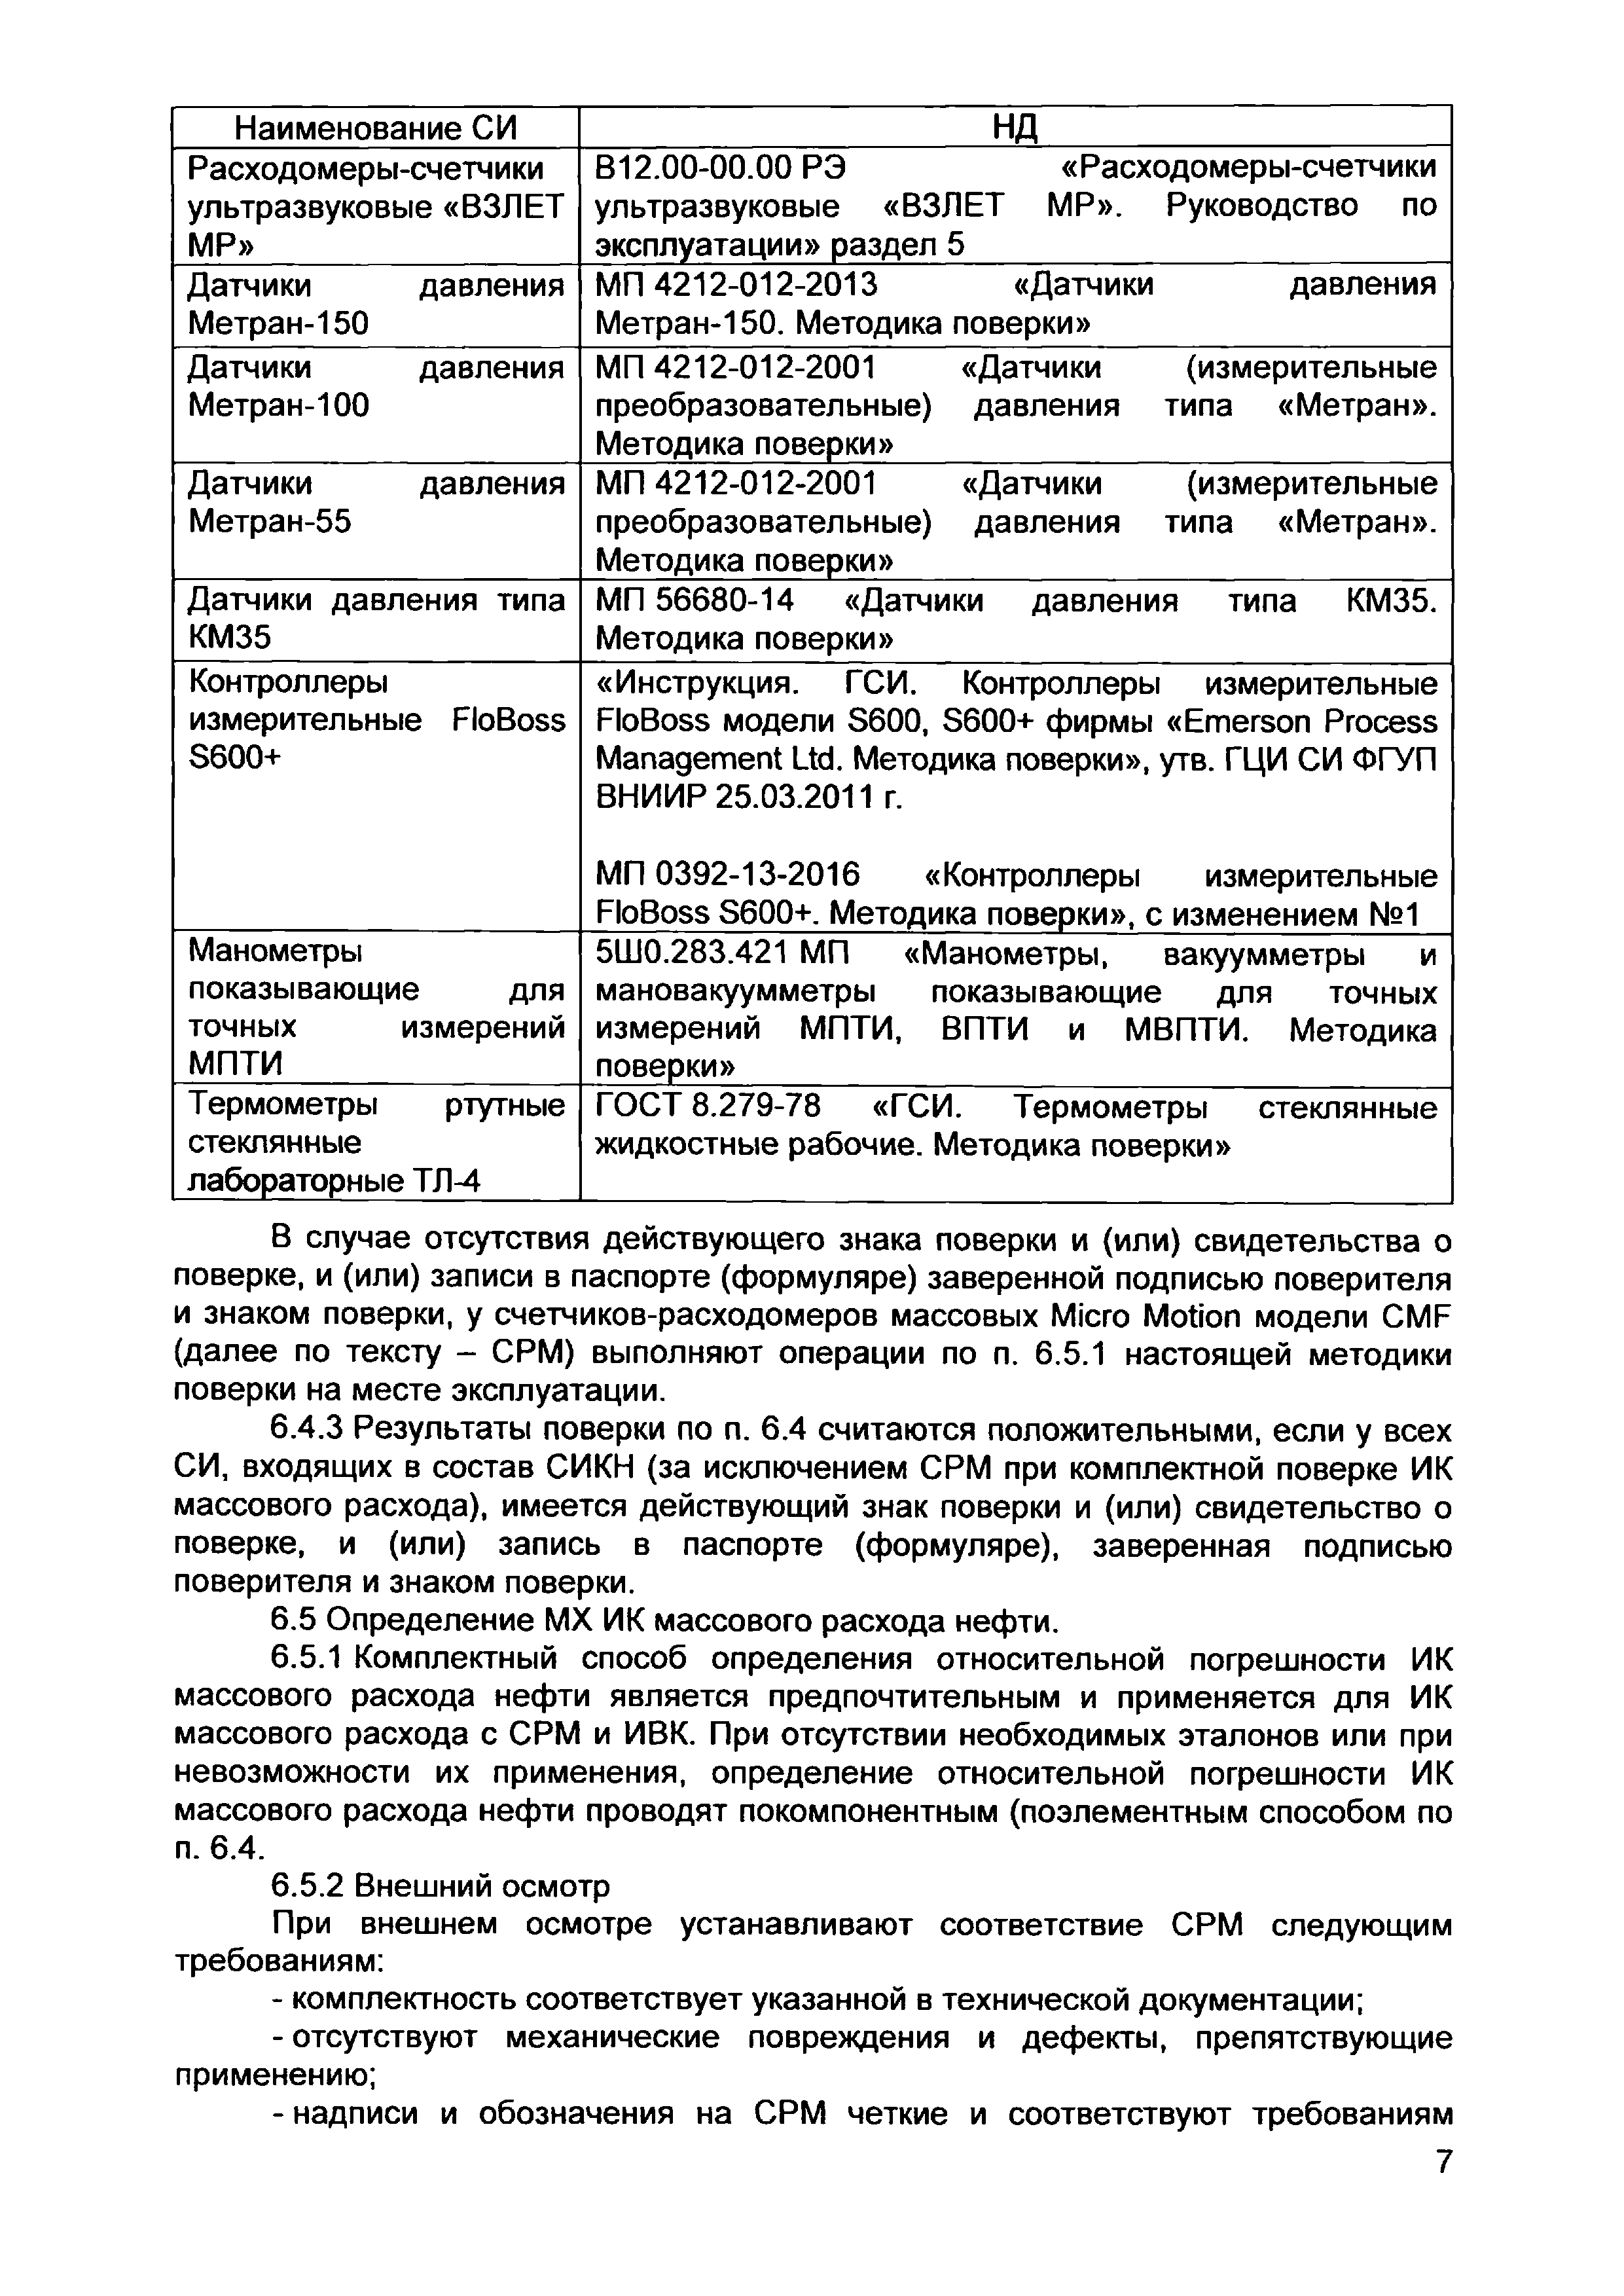 НА.ГНМЦ.0293-19 МП